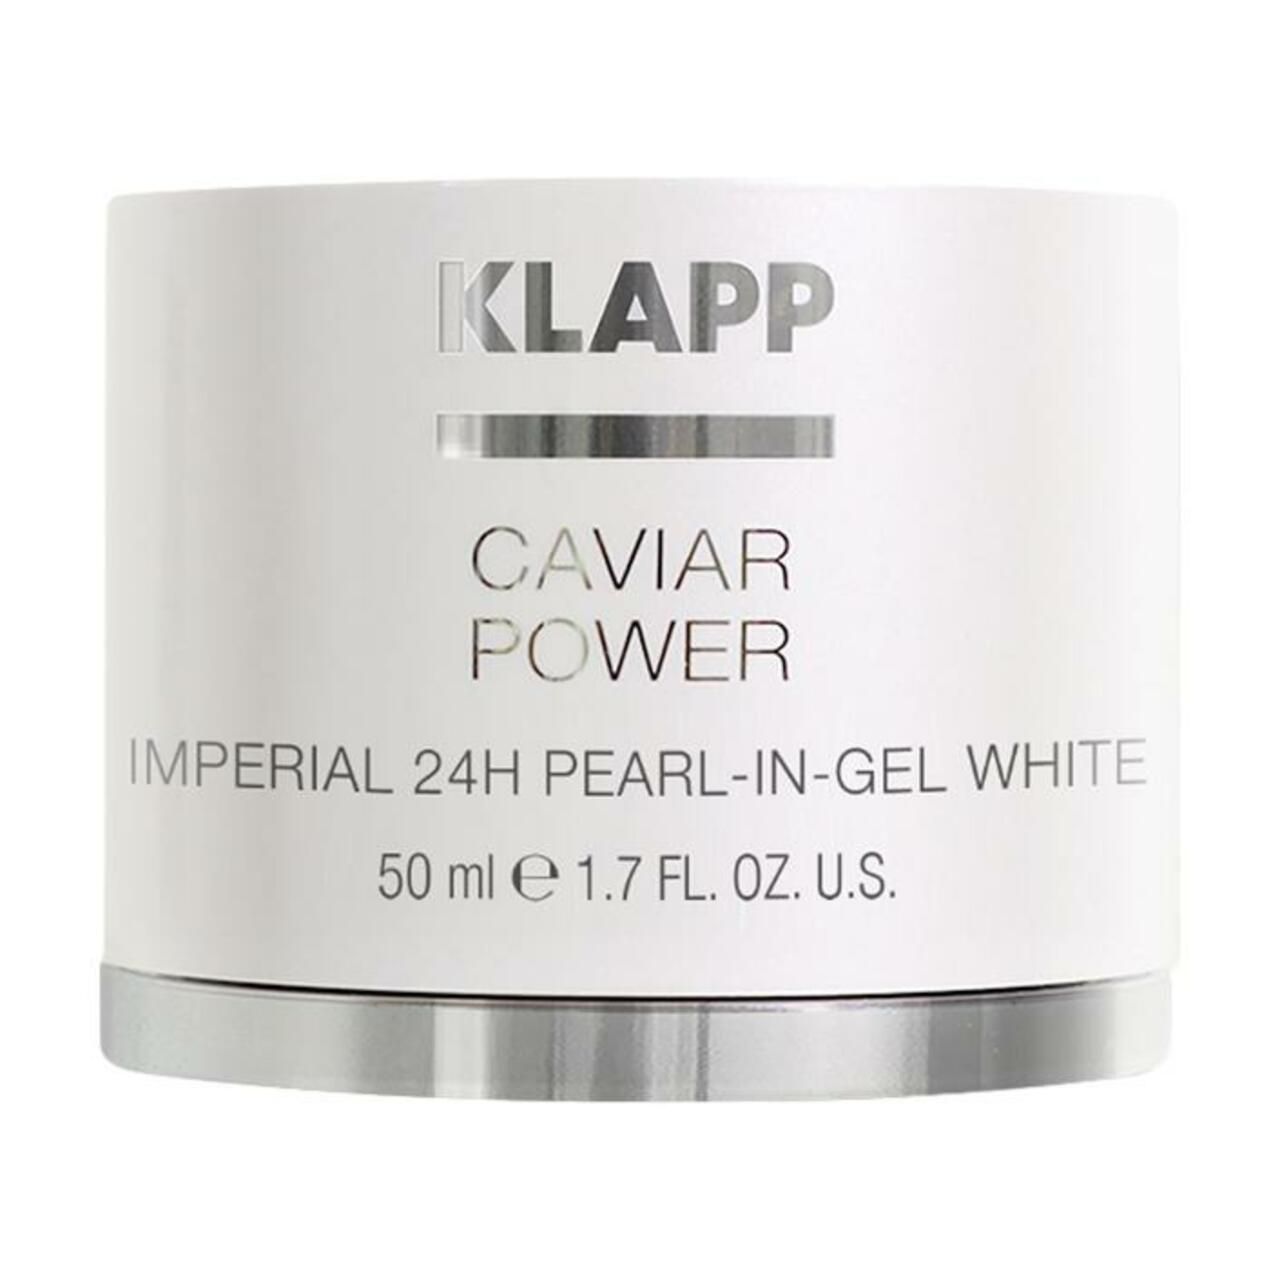 Klapp, Caviar Power Imperial 24H Pearl-in-Gel White